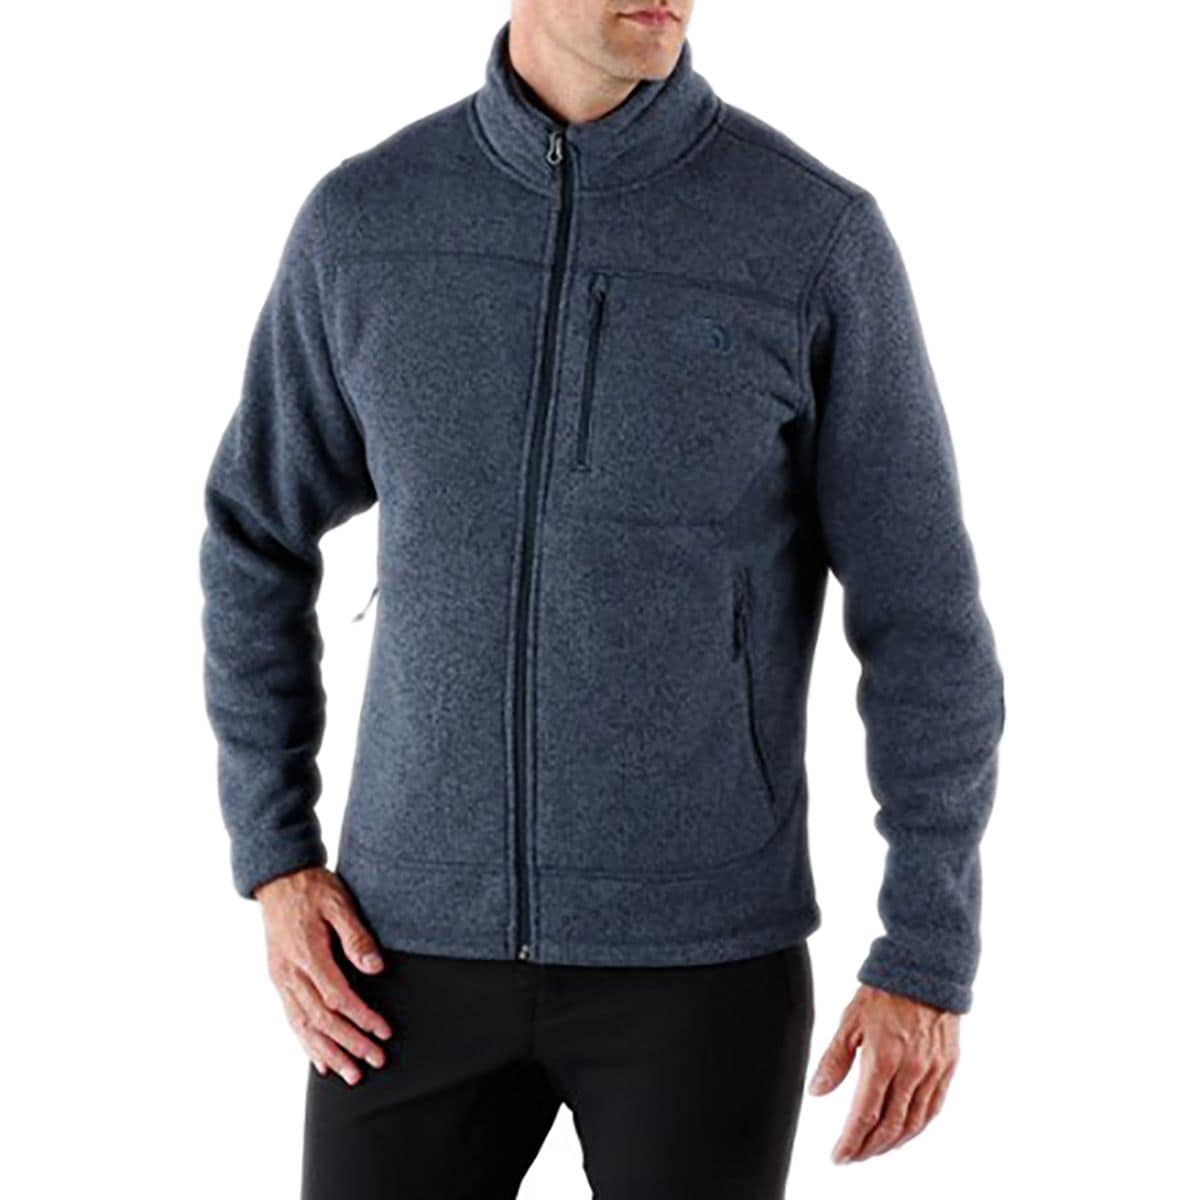 gordon lyons hooded fleece jacket